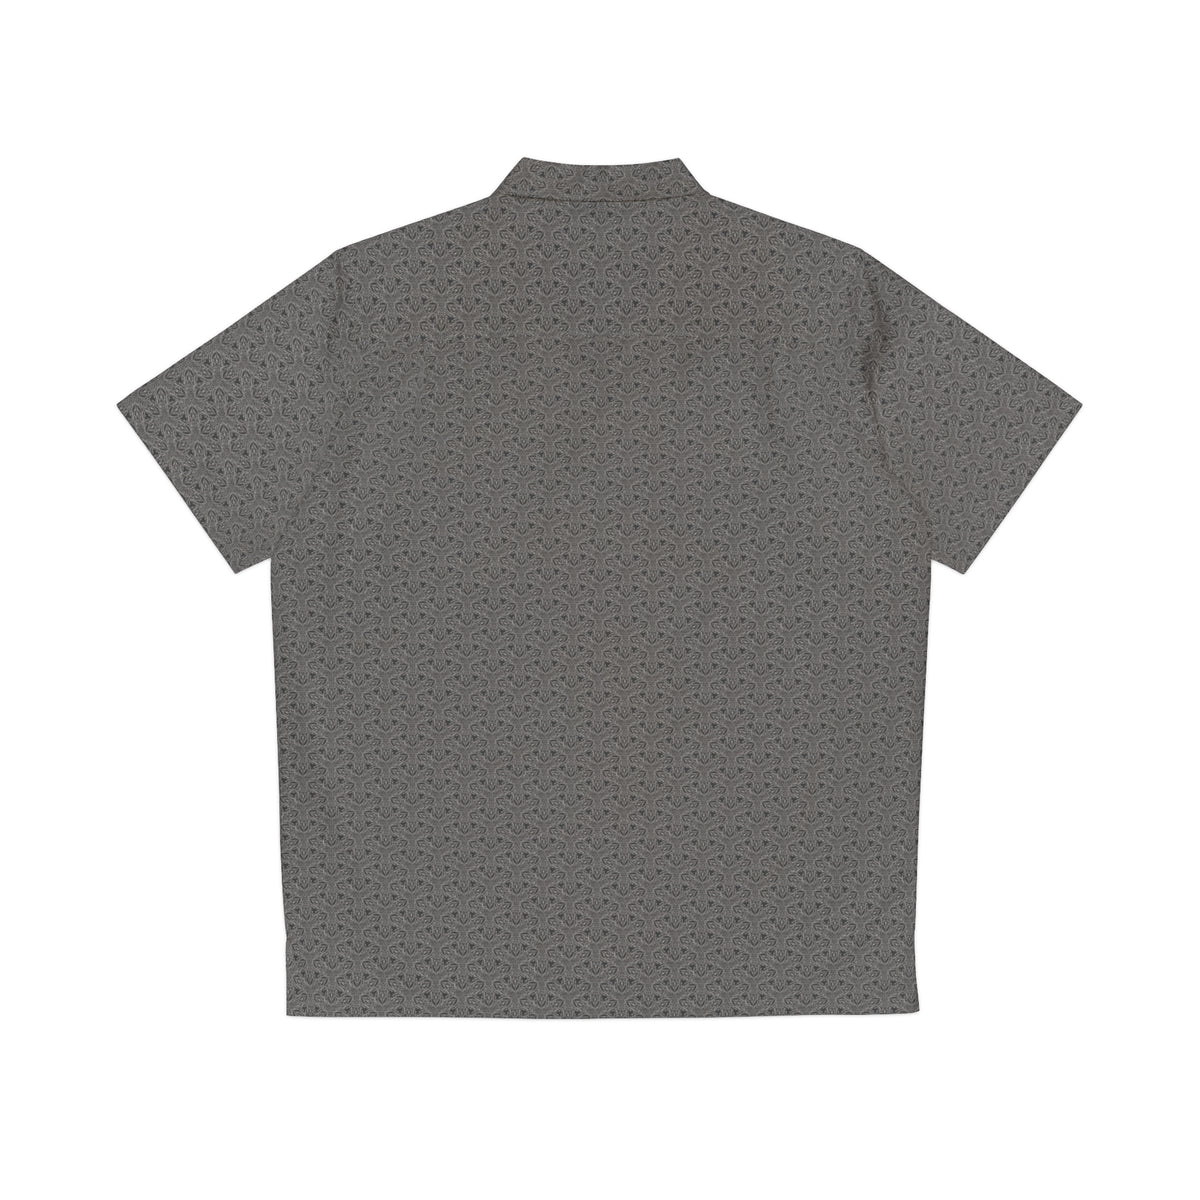 Black and White Geometry - Men's Hawaiian Shirt